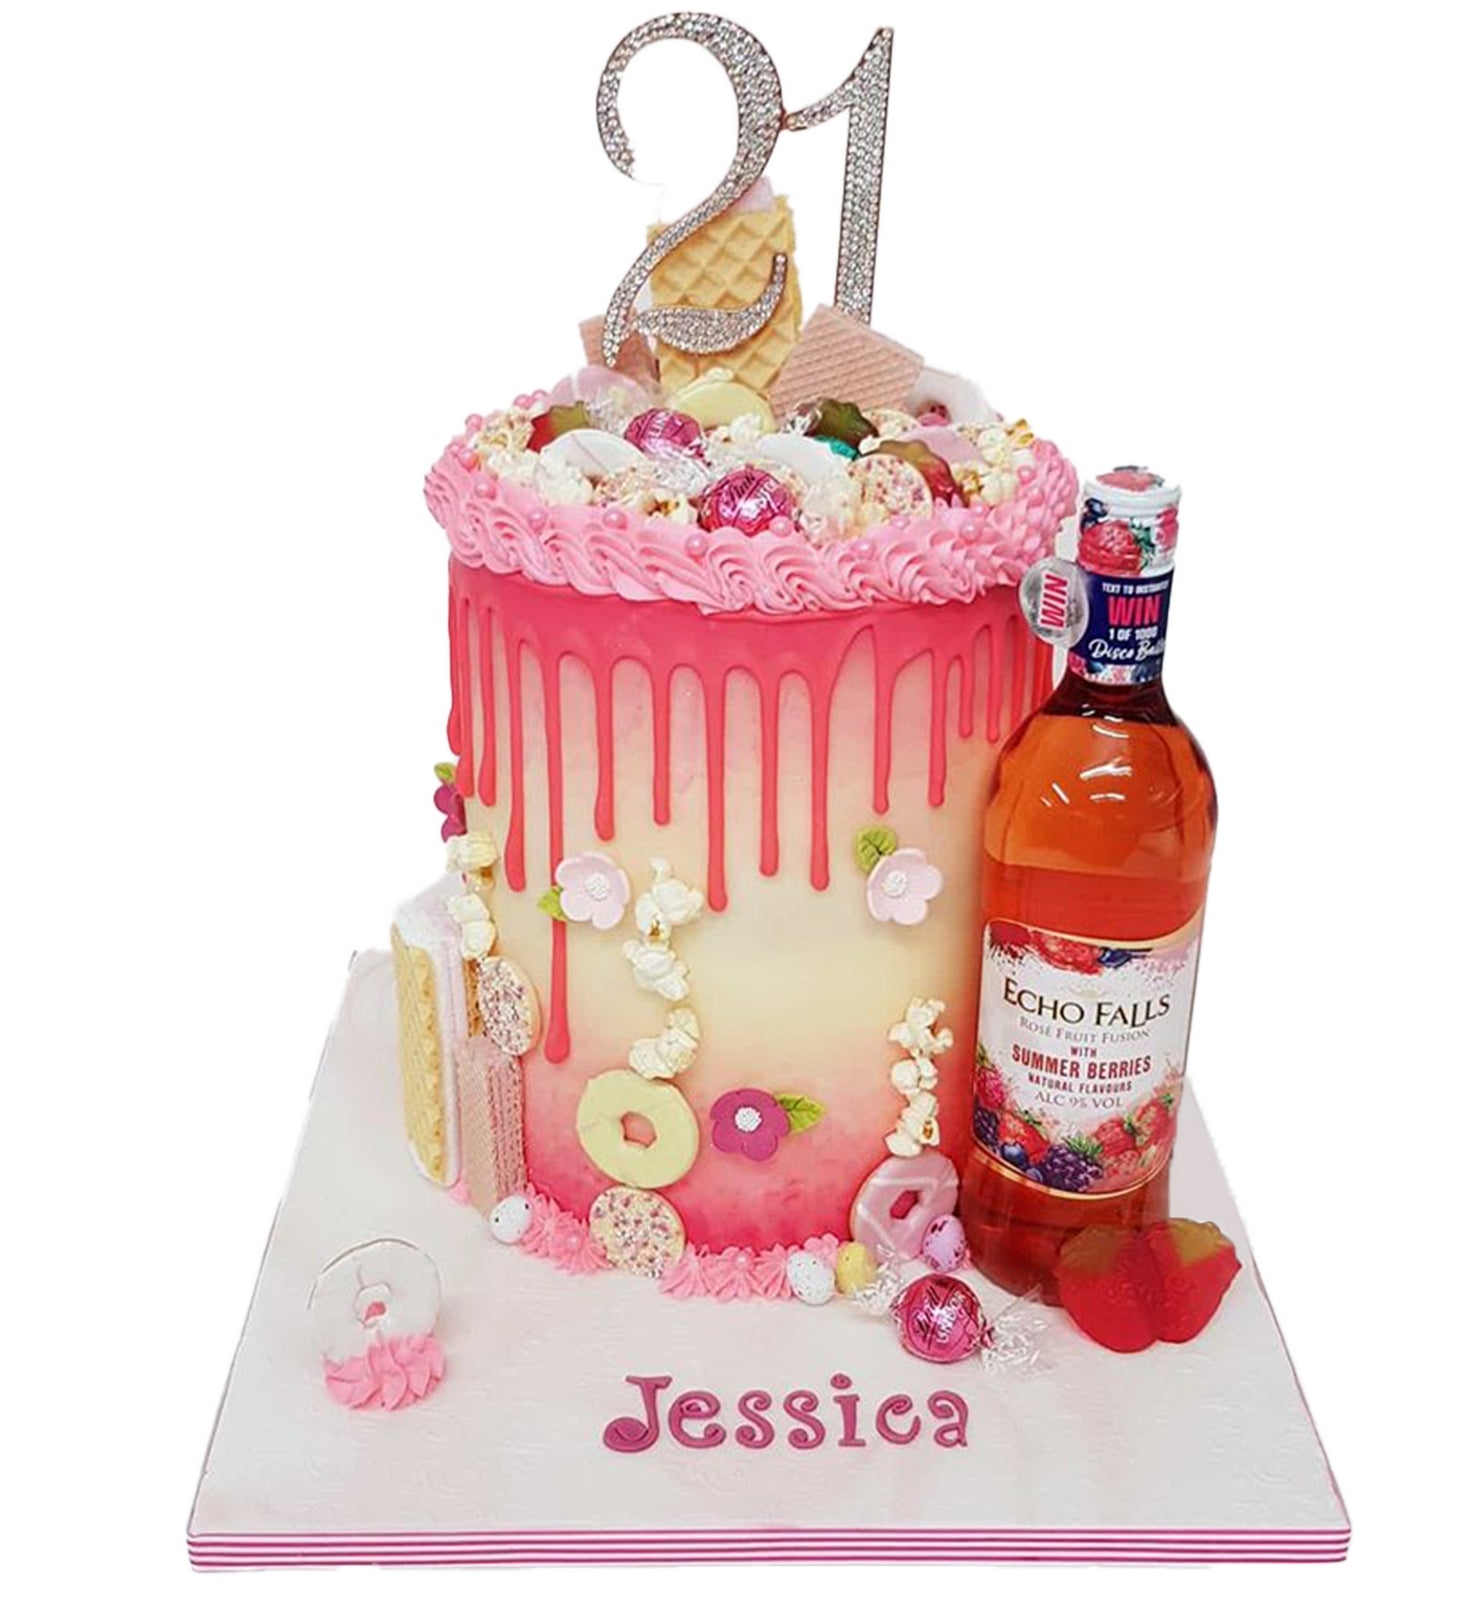 Whisky wine bottle fondant cake, Food & Drinks, Homemade Bakes on Carousell